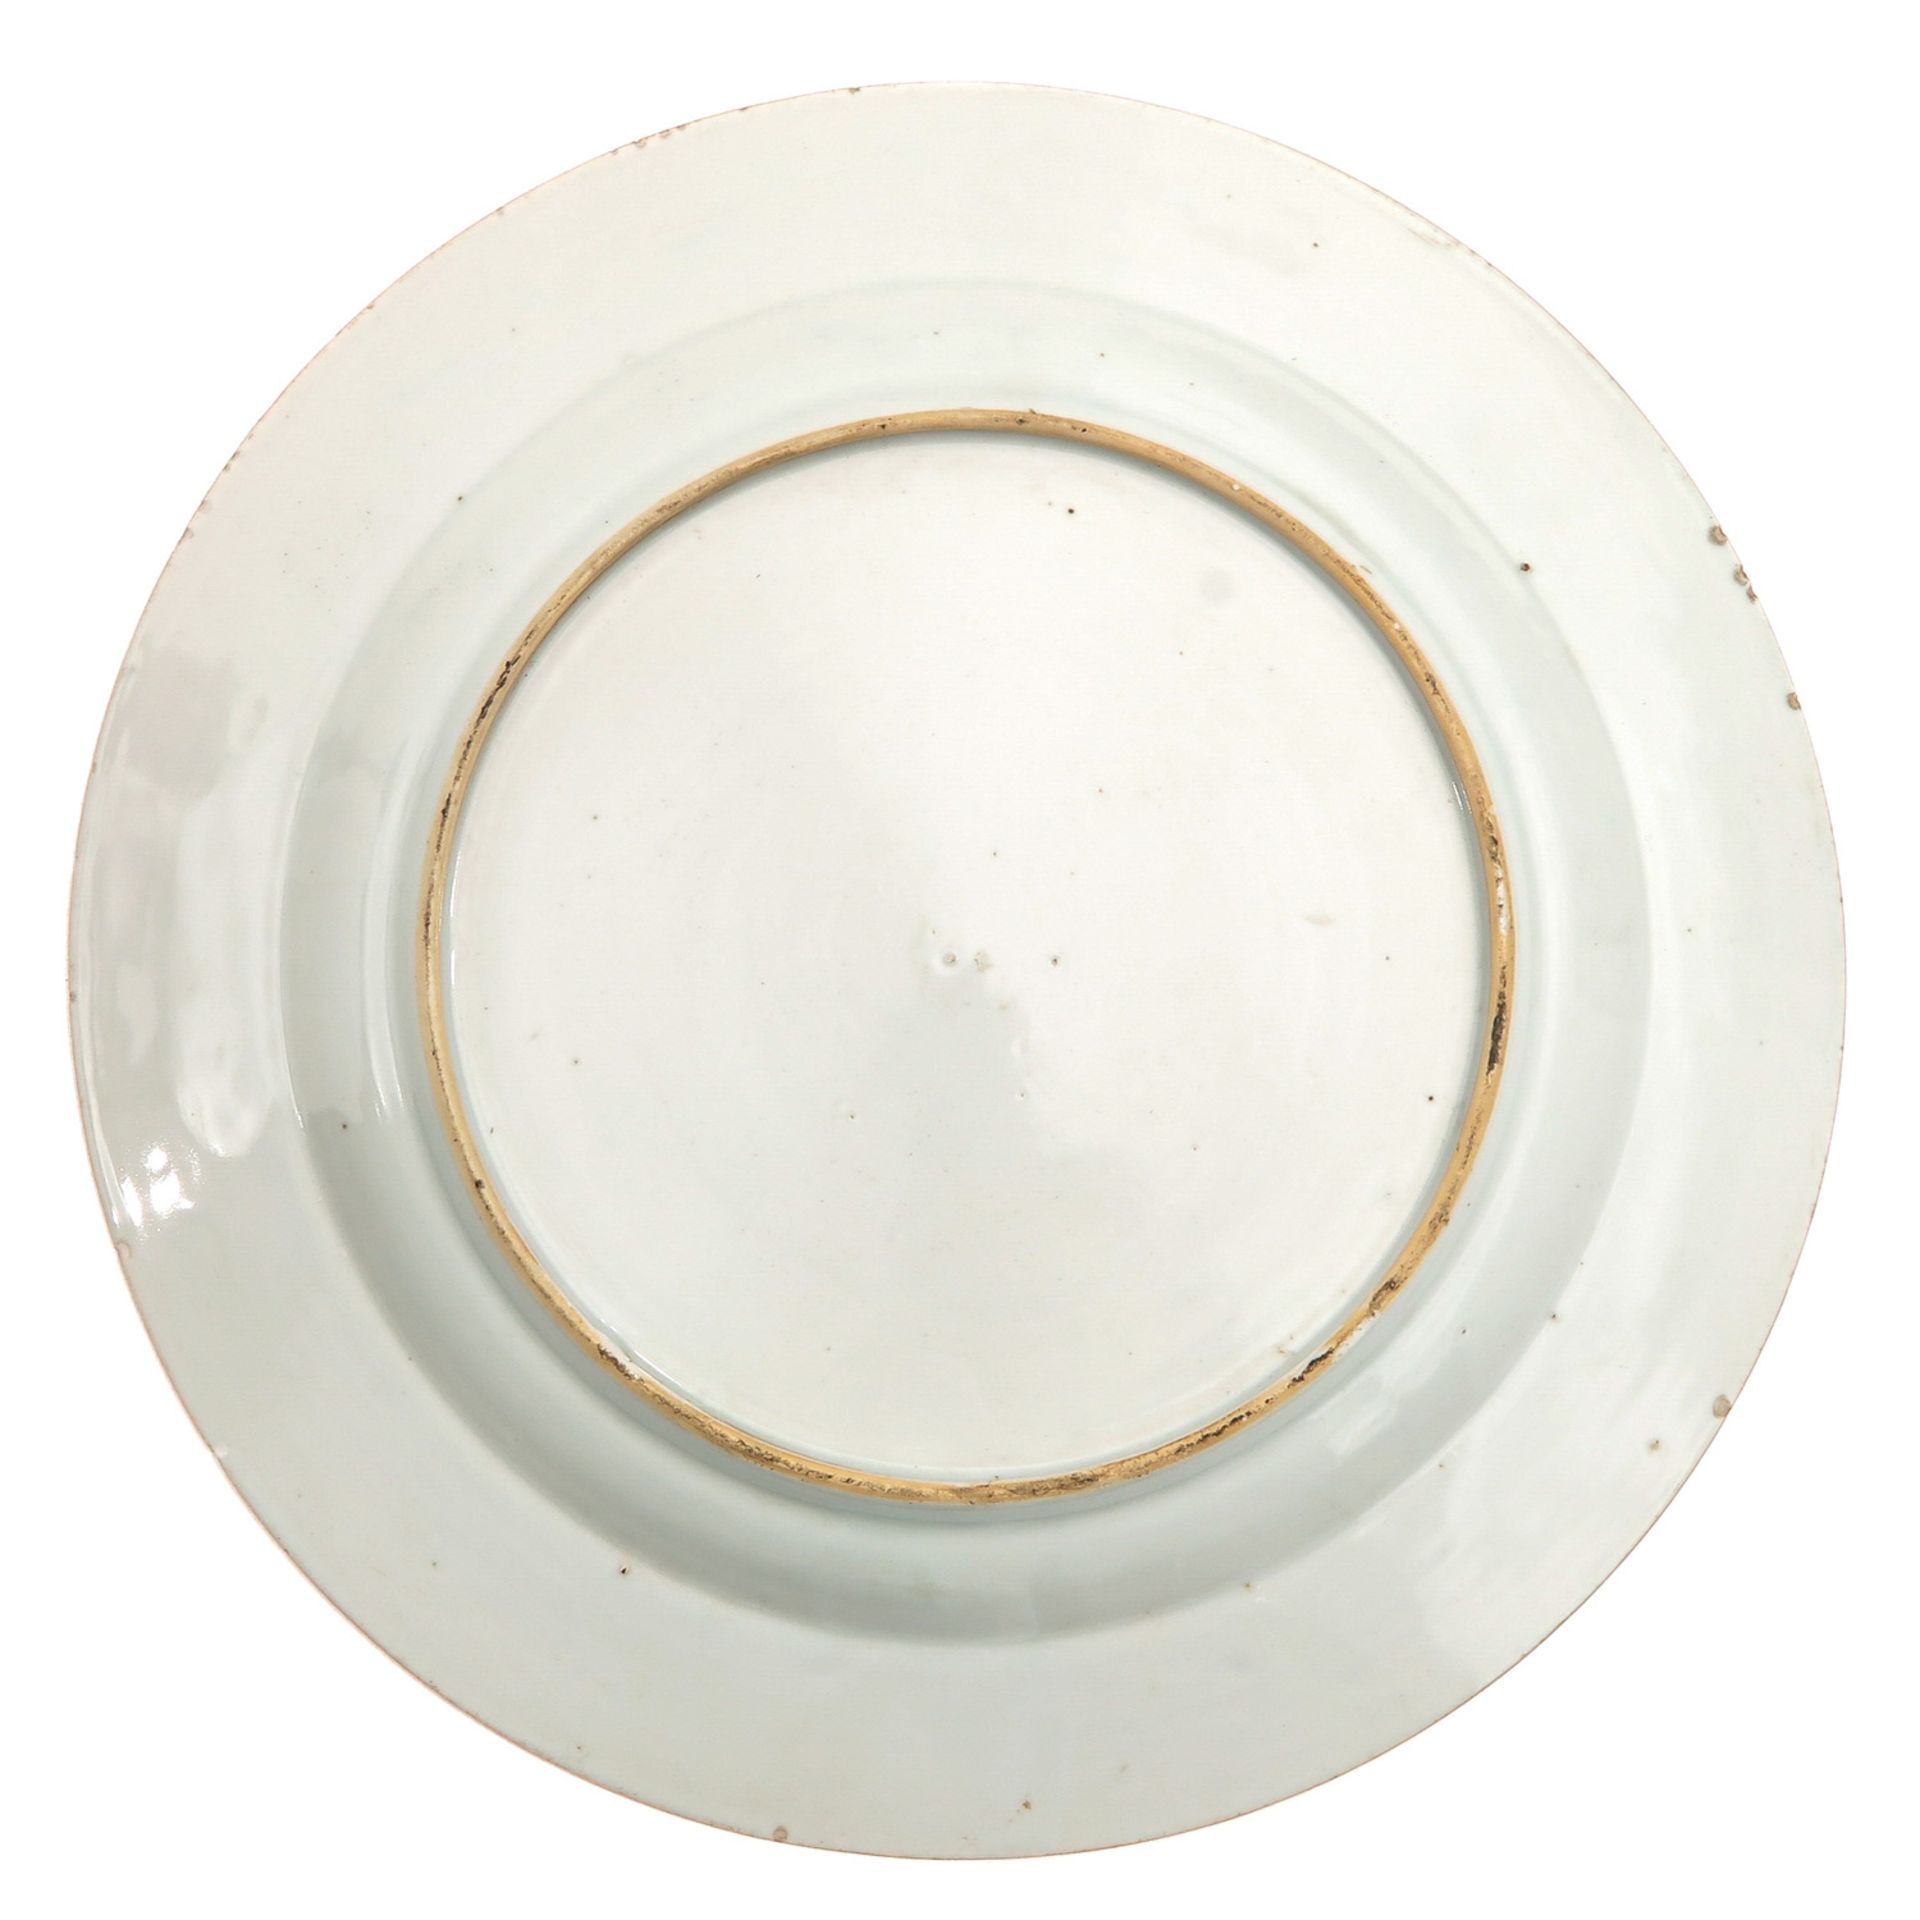 An Imari Plate - Image 2 of 5